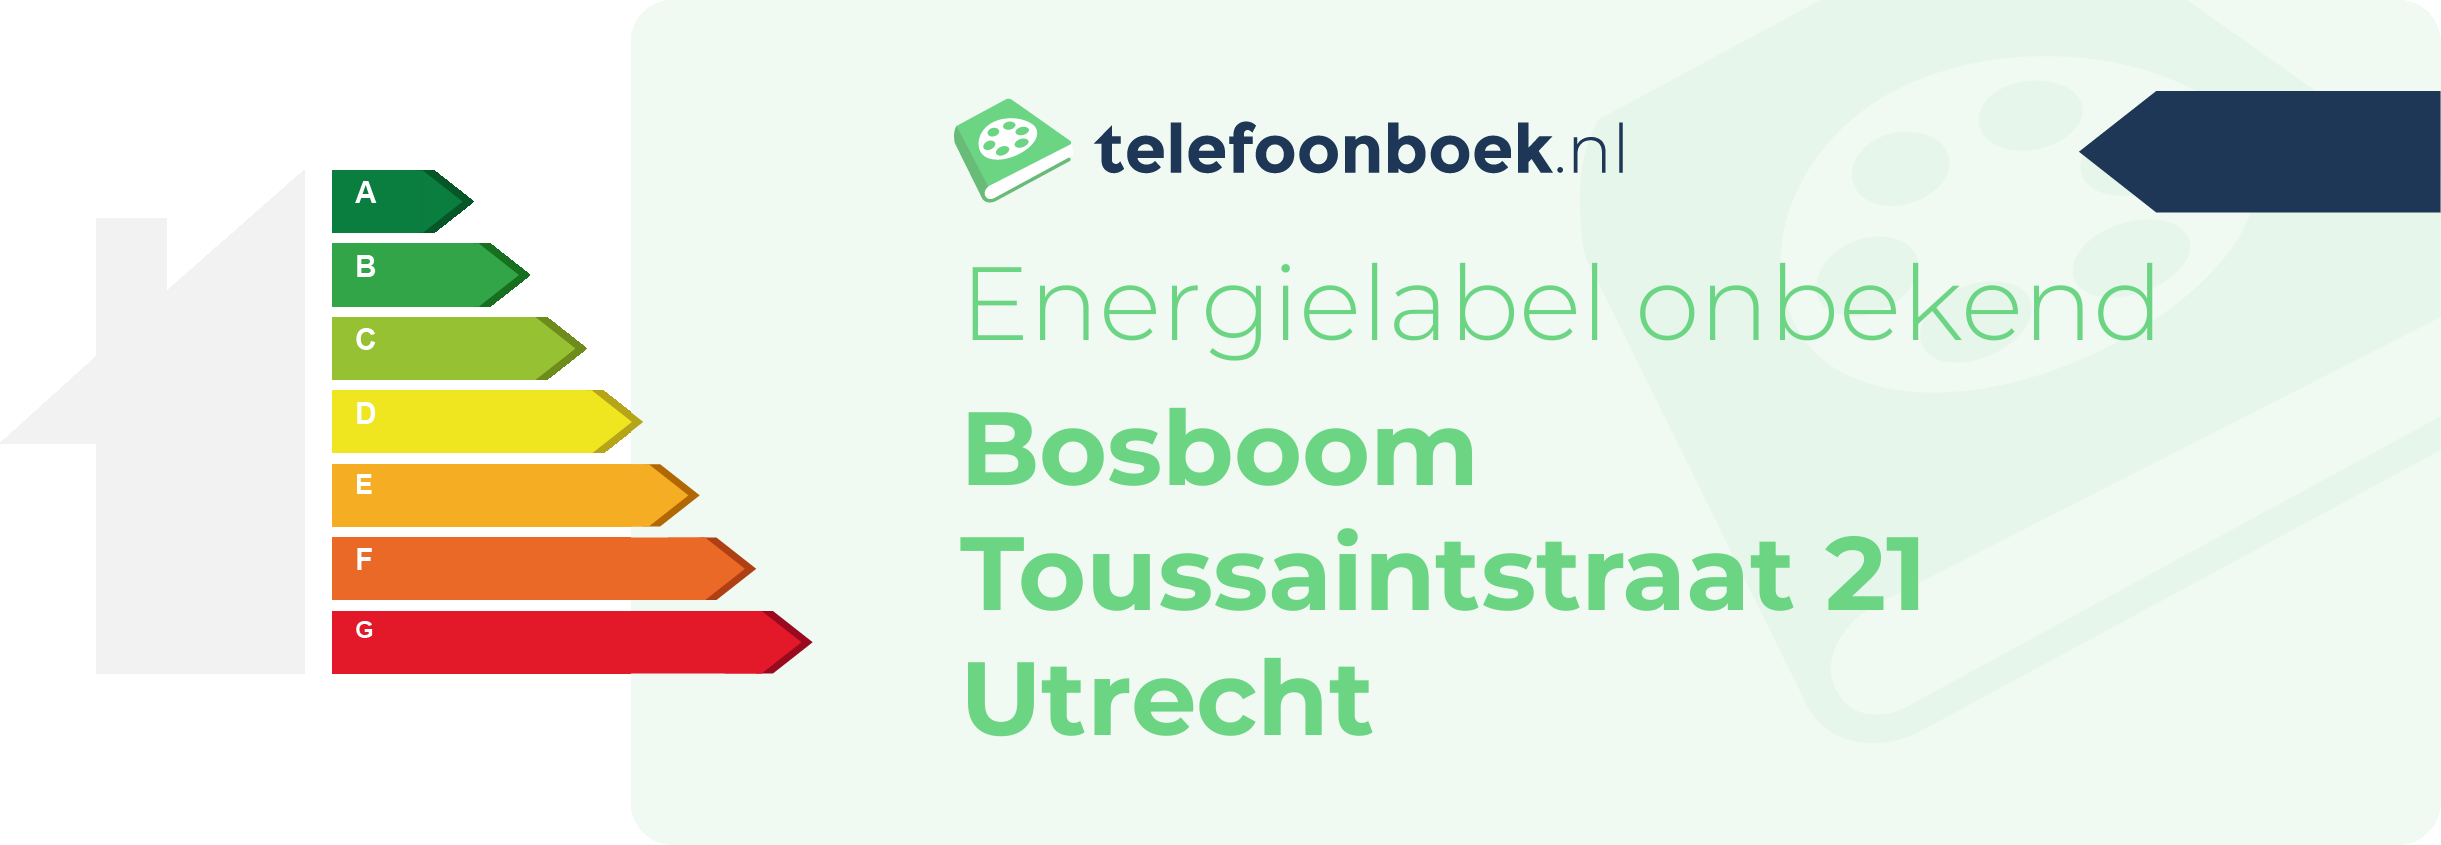 Energielabel Bosboom Toussaintstraat 21 Utrecht